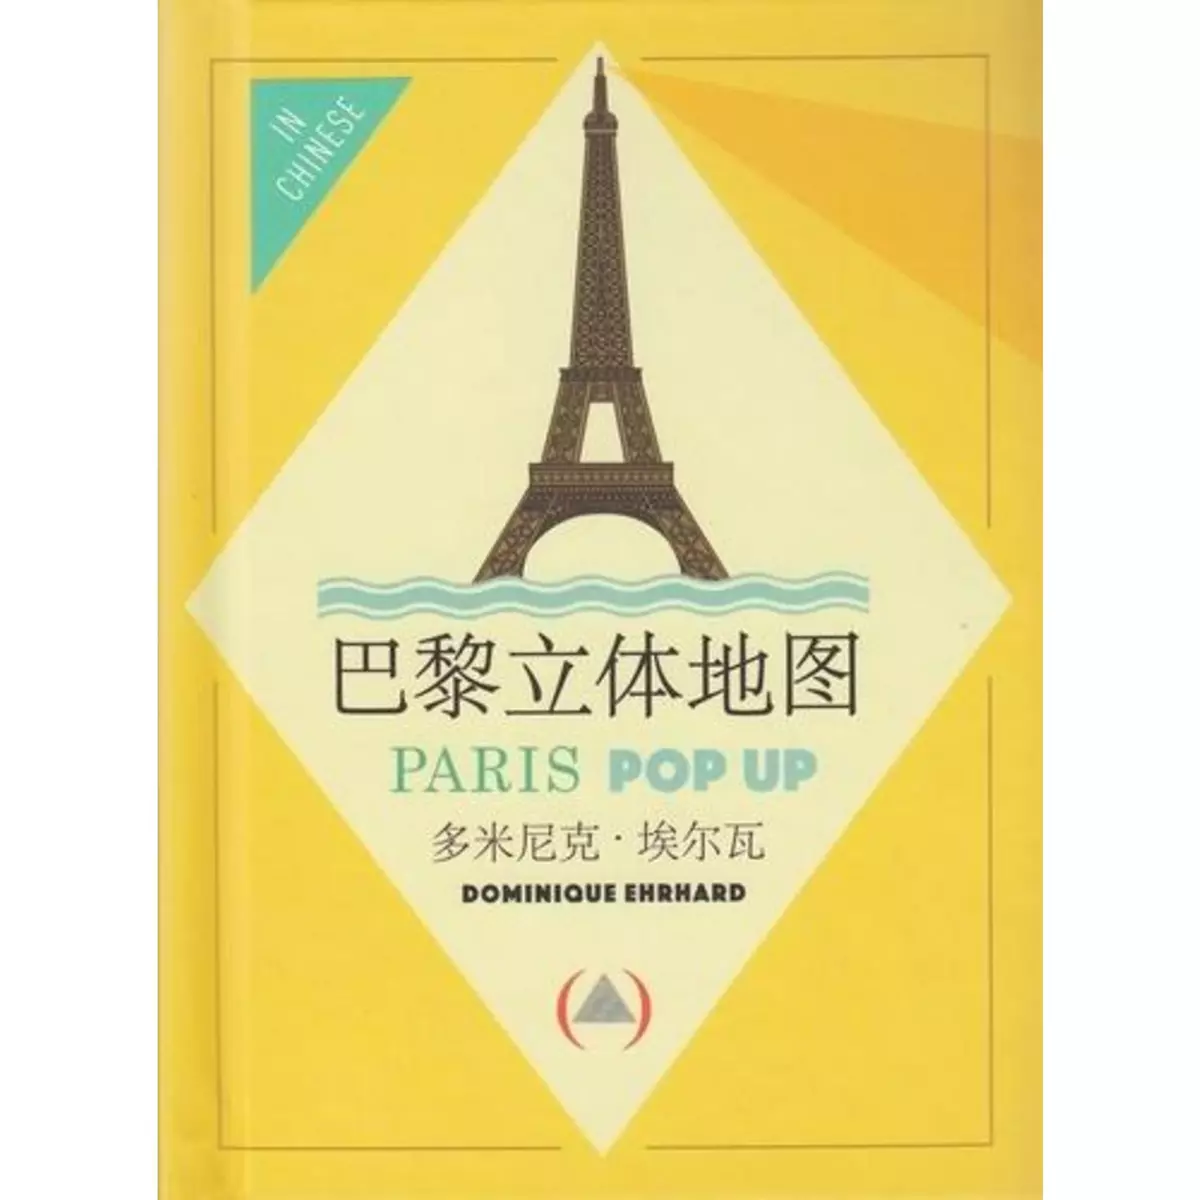  PARIS POP UP. EDITION EN CHINOIS, Ehrhard Dominique